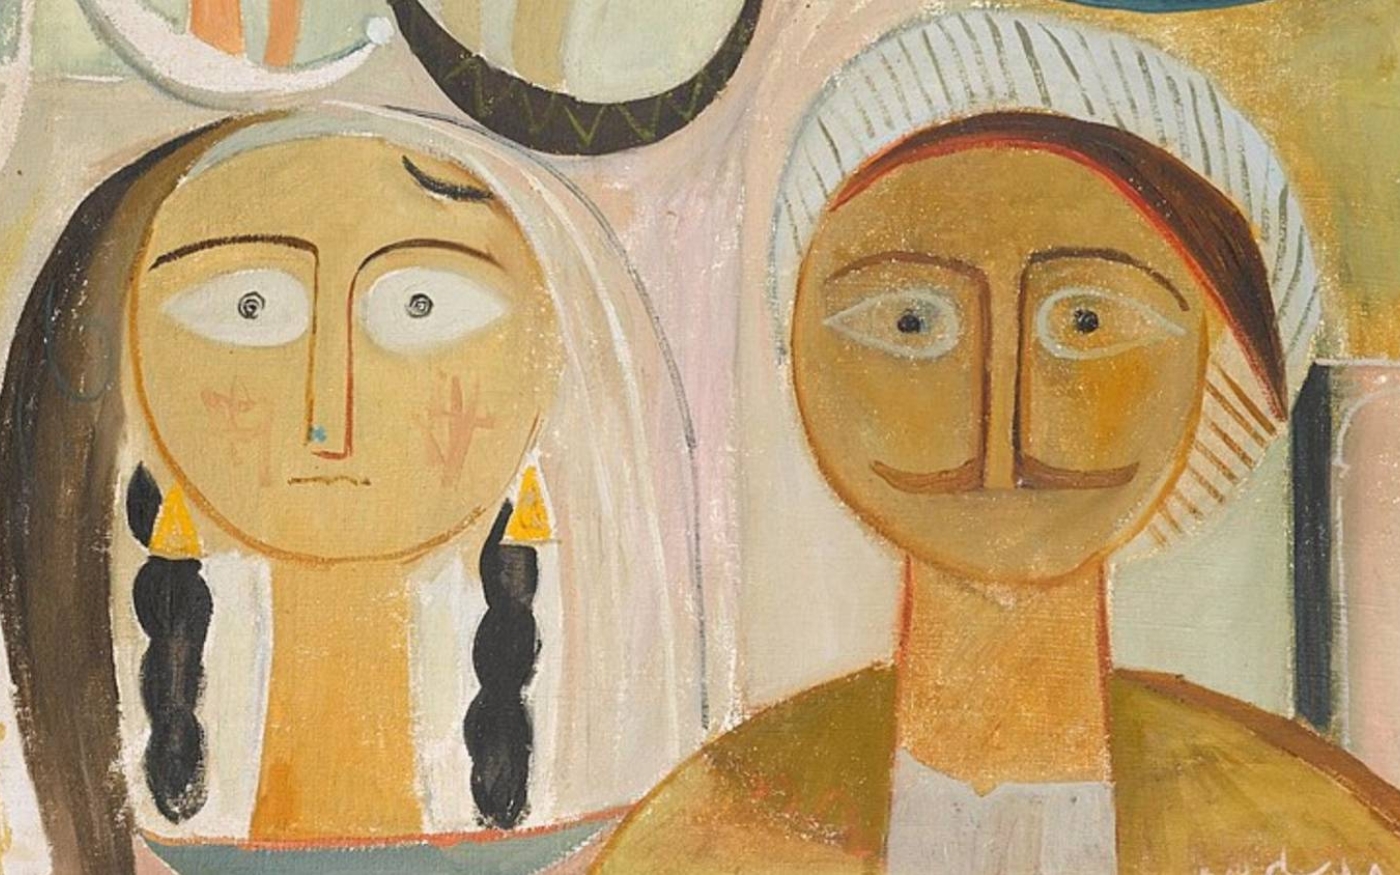 L’artiste irakien Jawad Selim a été l’un des premiers artistes arabes à utiliser le cubisme dans son travail, comme ici dans Young Man and Wife en 1953 (domaine public)